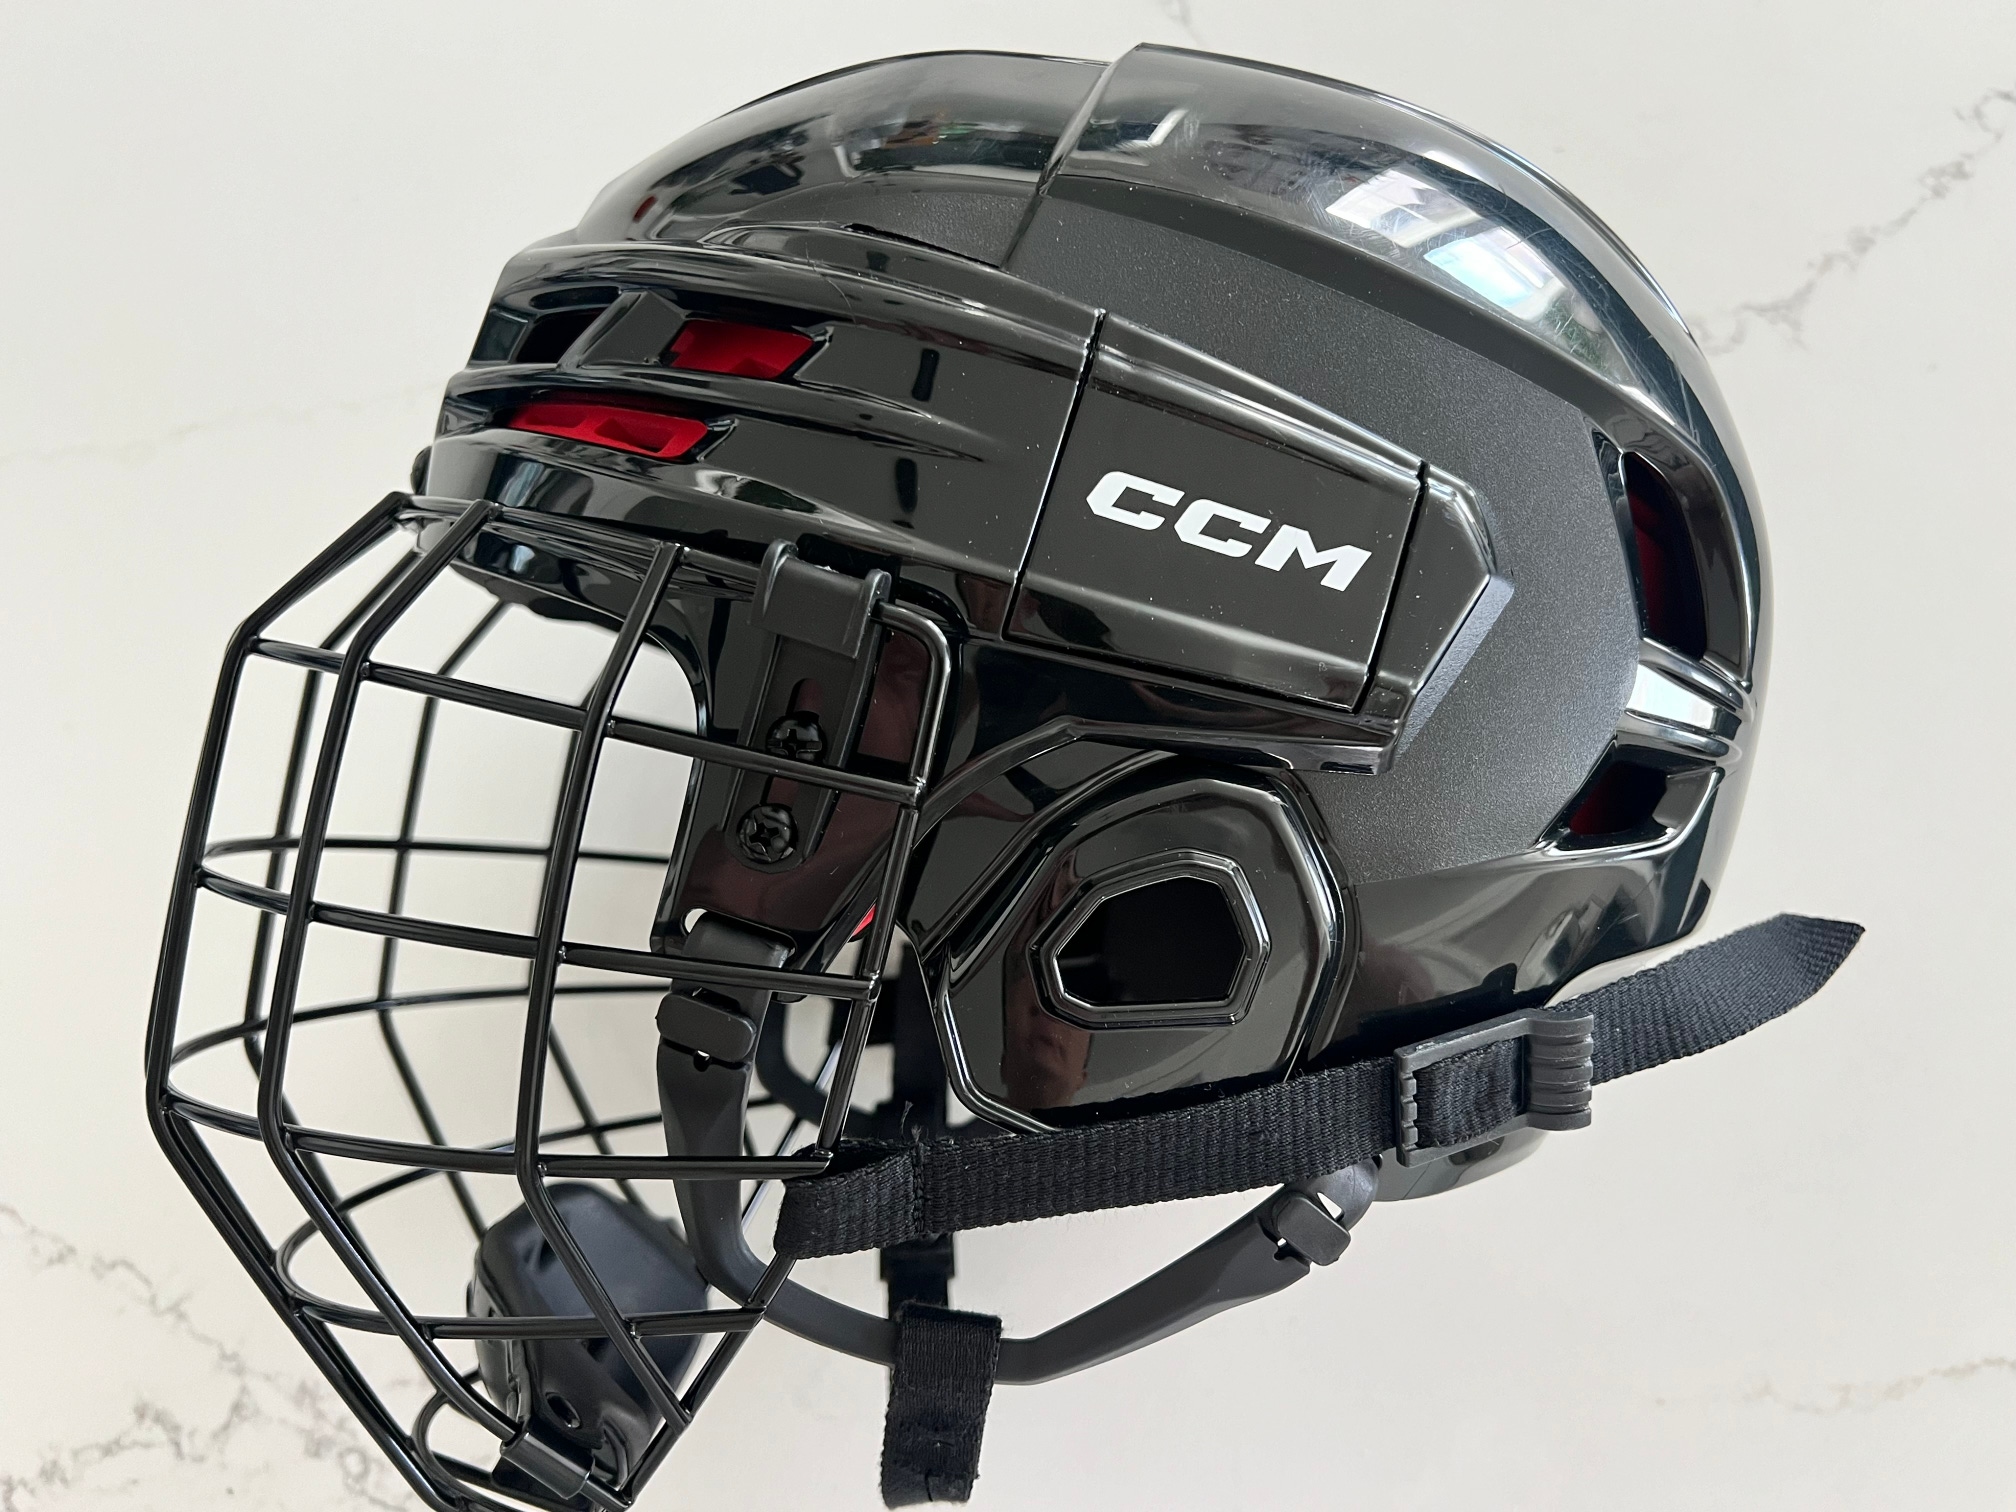 Used Medium CCM Tacks 70 Helmet